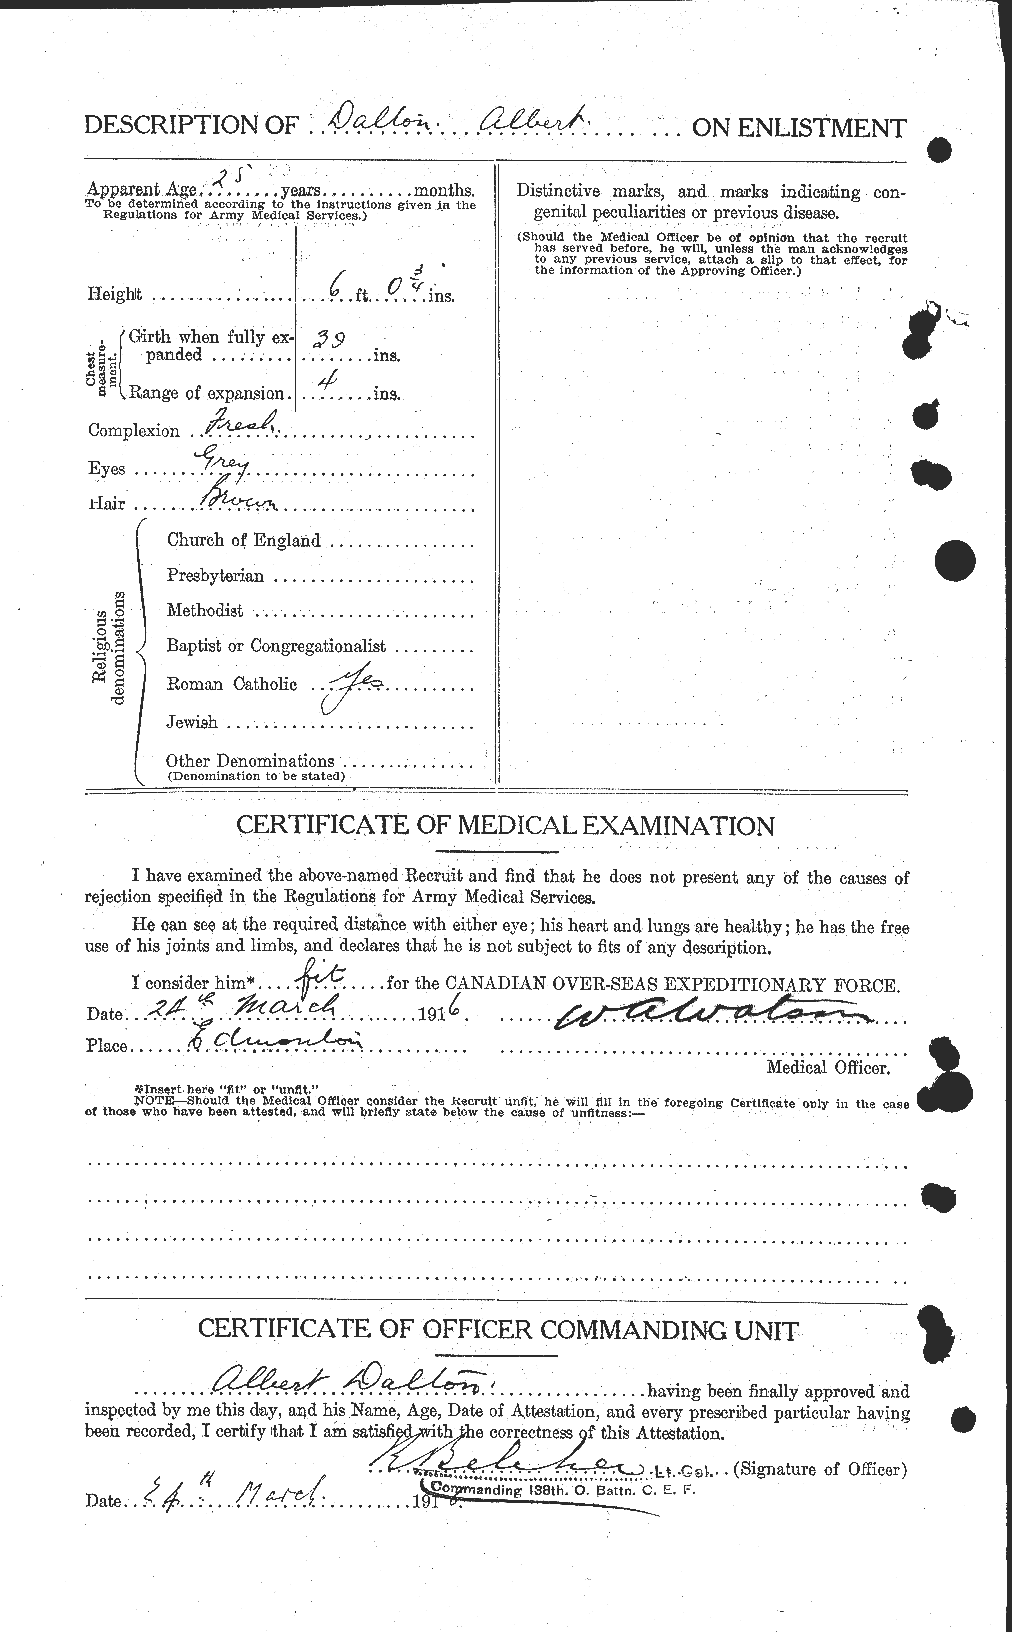 Dossiers du Personnel de la Première Guerre mondiale - CEC 277647b